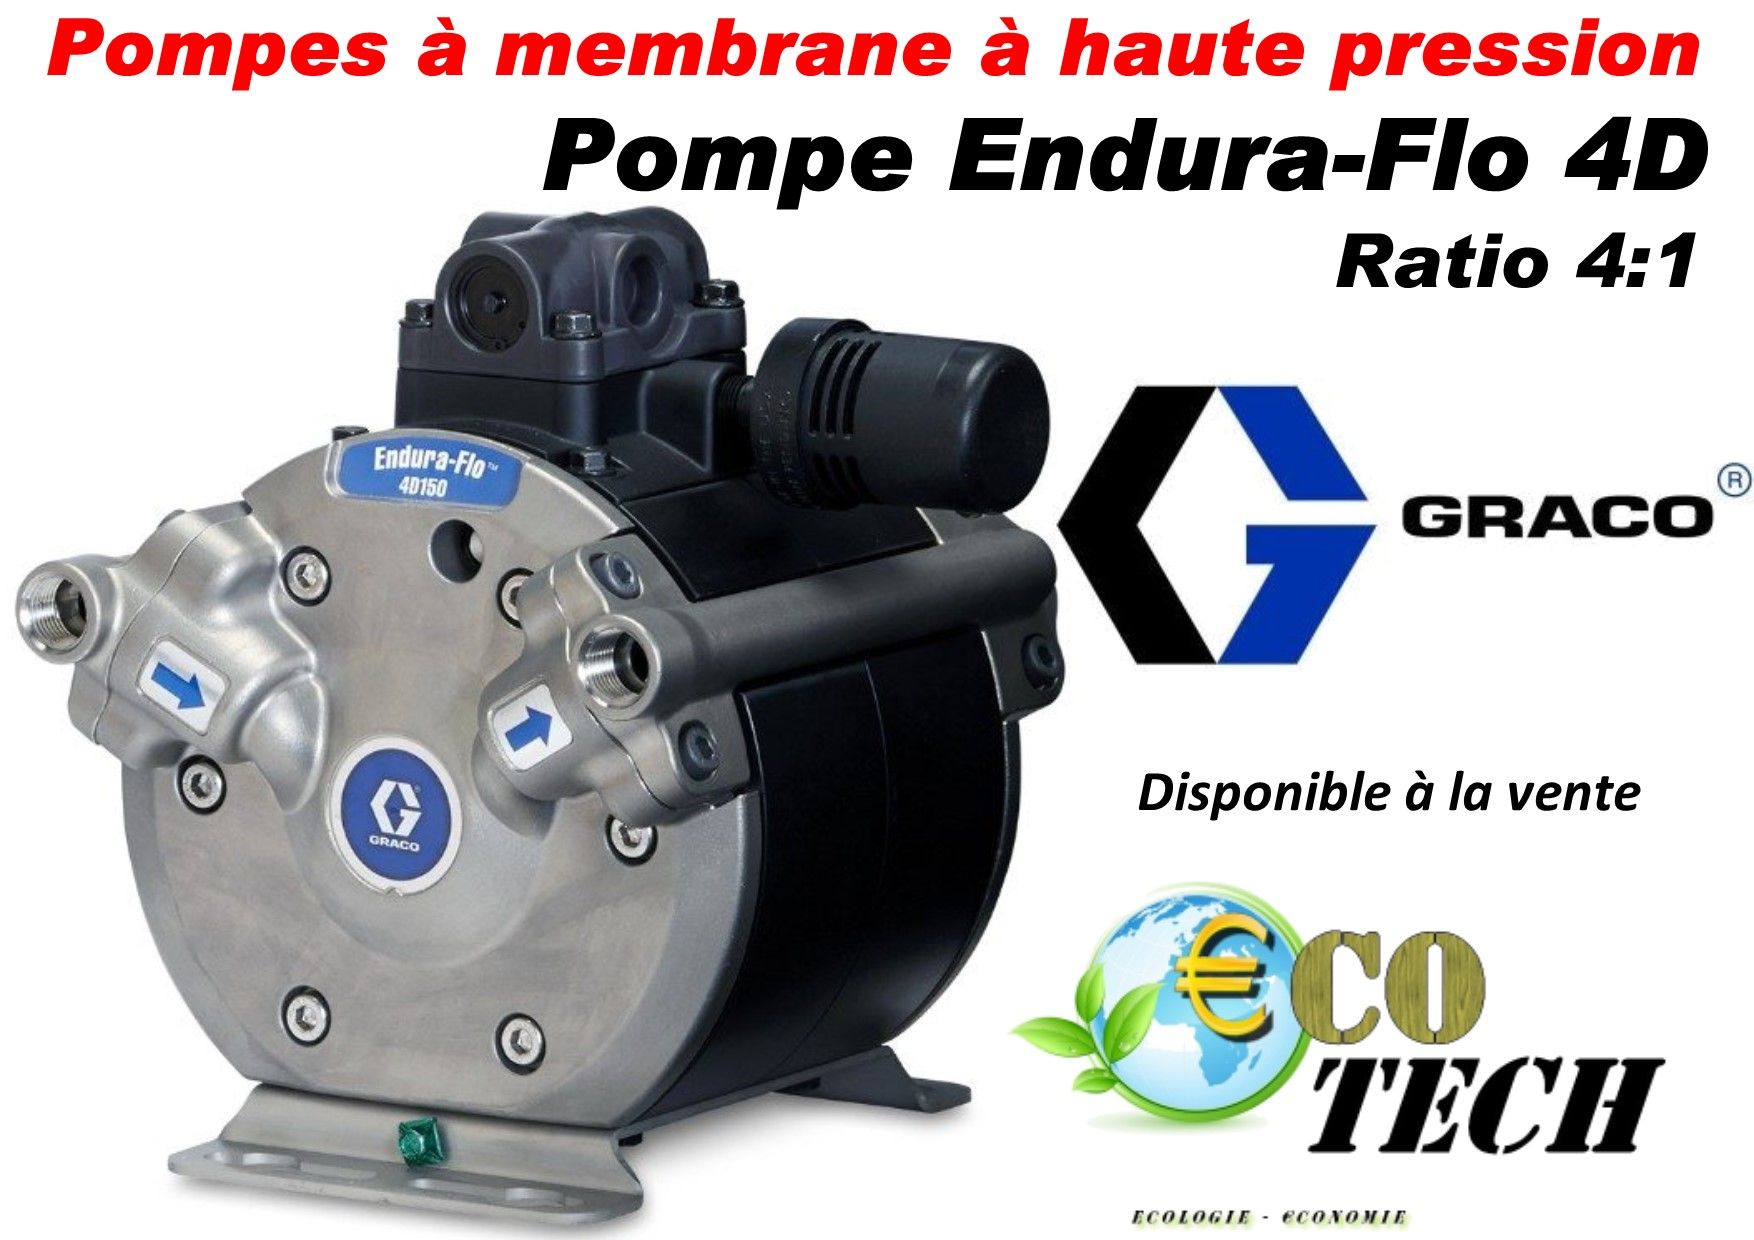 Pompes à membrane à haute pression 4:1 graco endura-flo 4d vendeur normandie_0